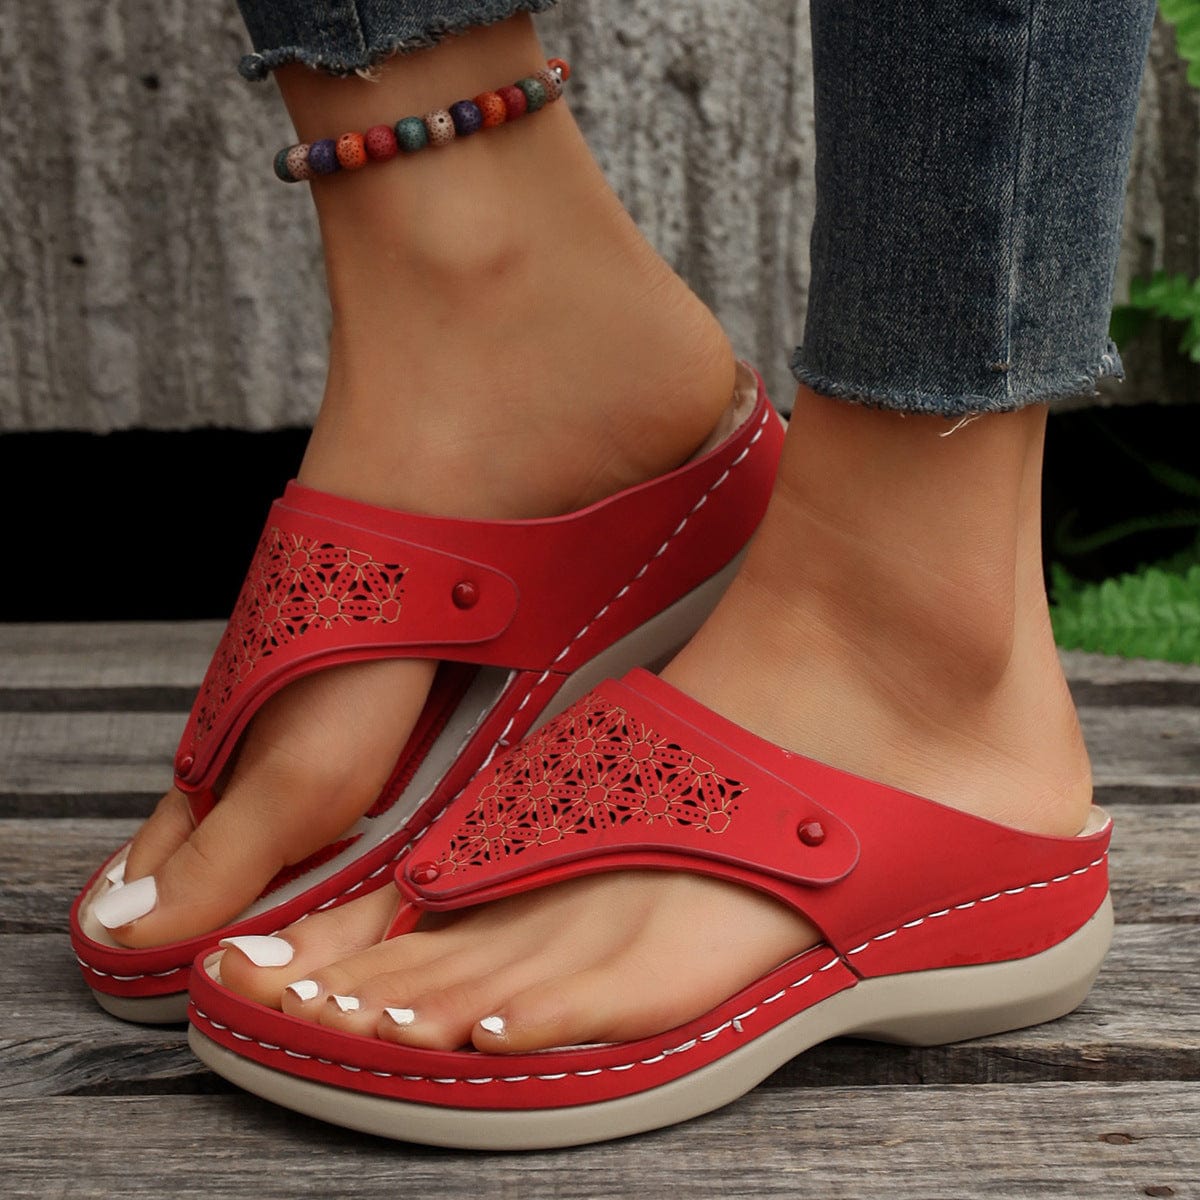 thong-sandals-summer-flip-flops-women-outdoor-slippers-beach-shoes